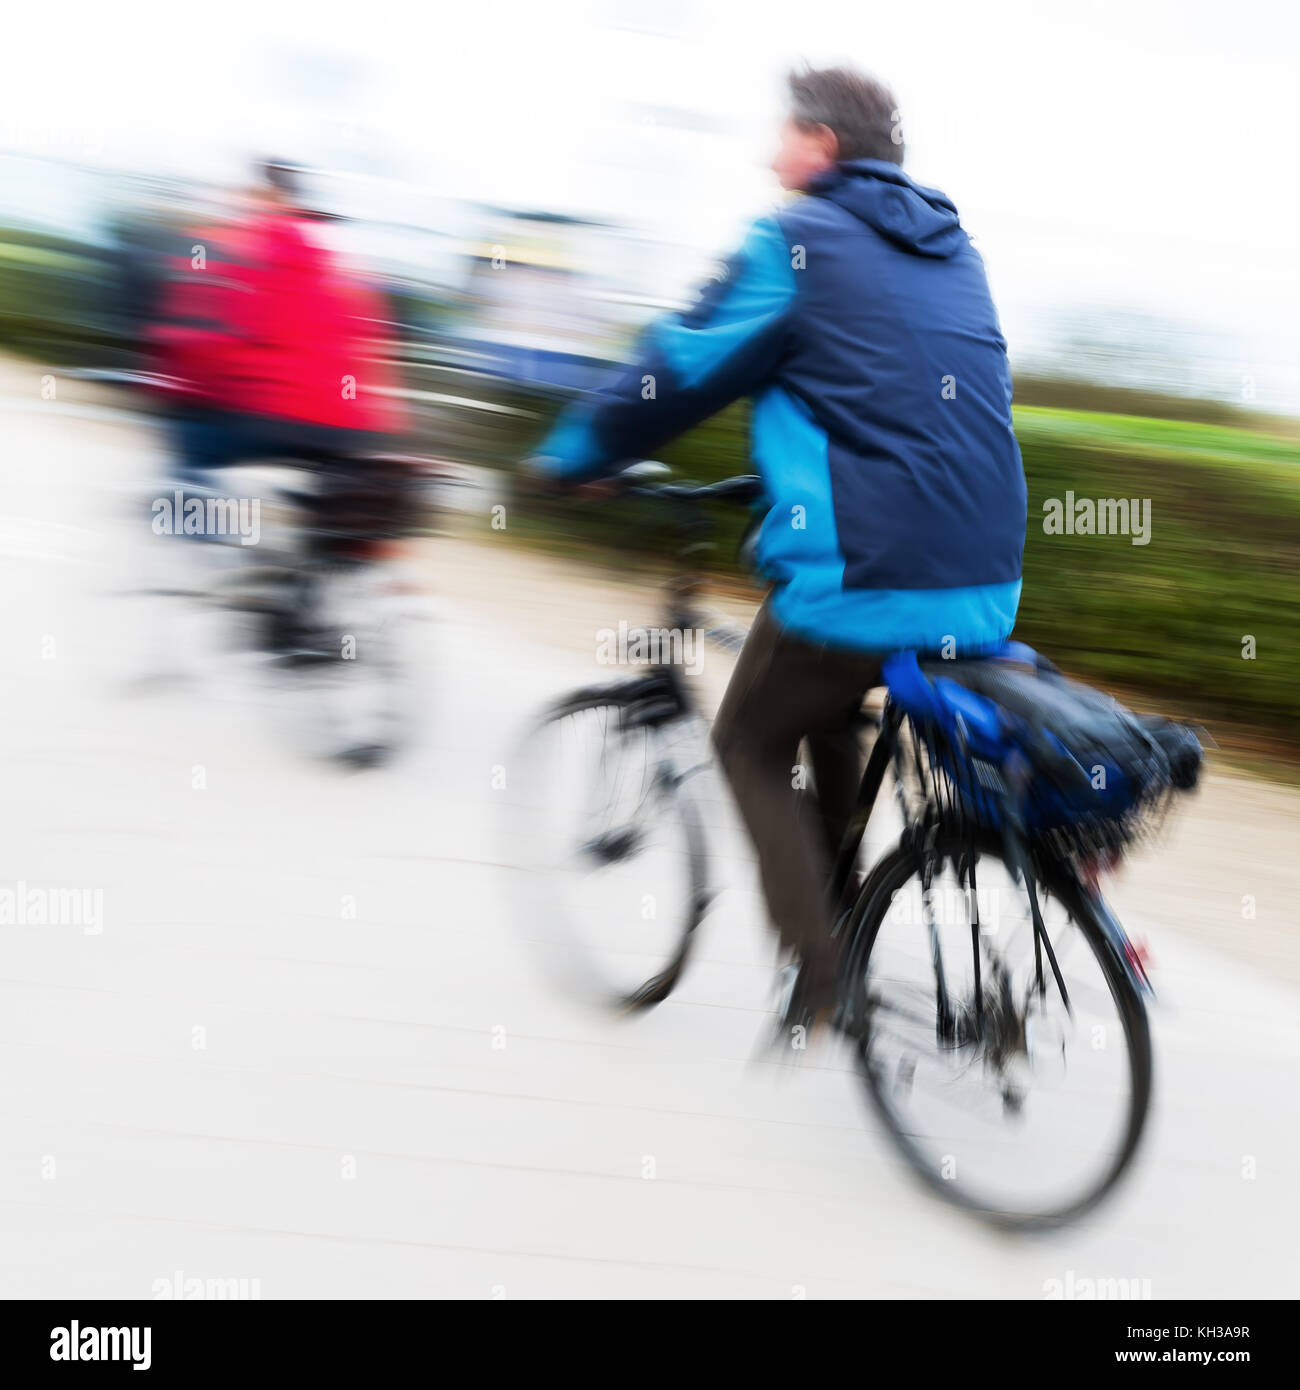 Foto di ciclisti in motion blur Foto Stock